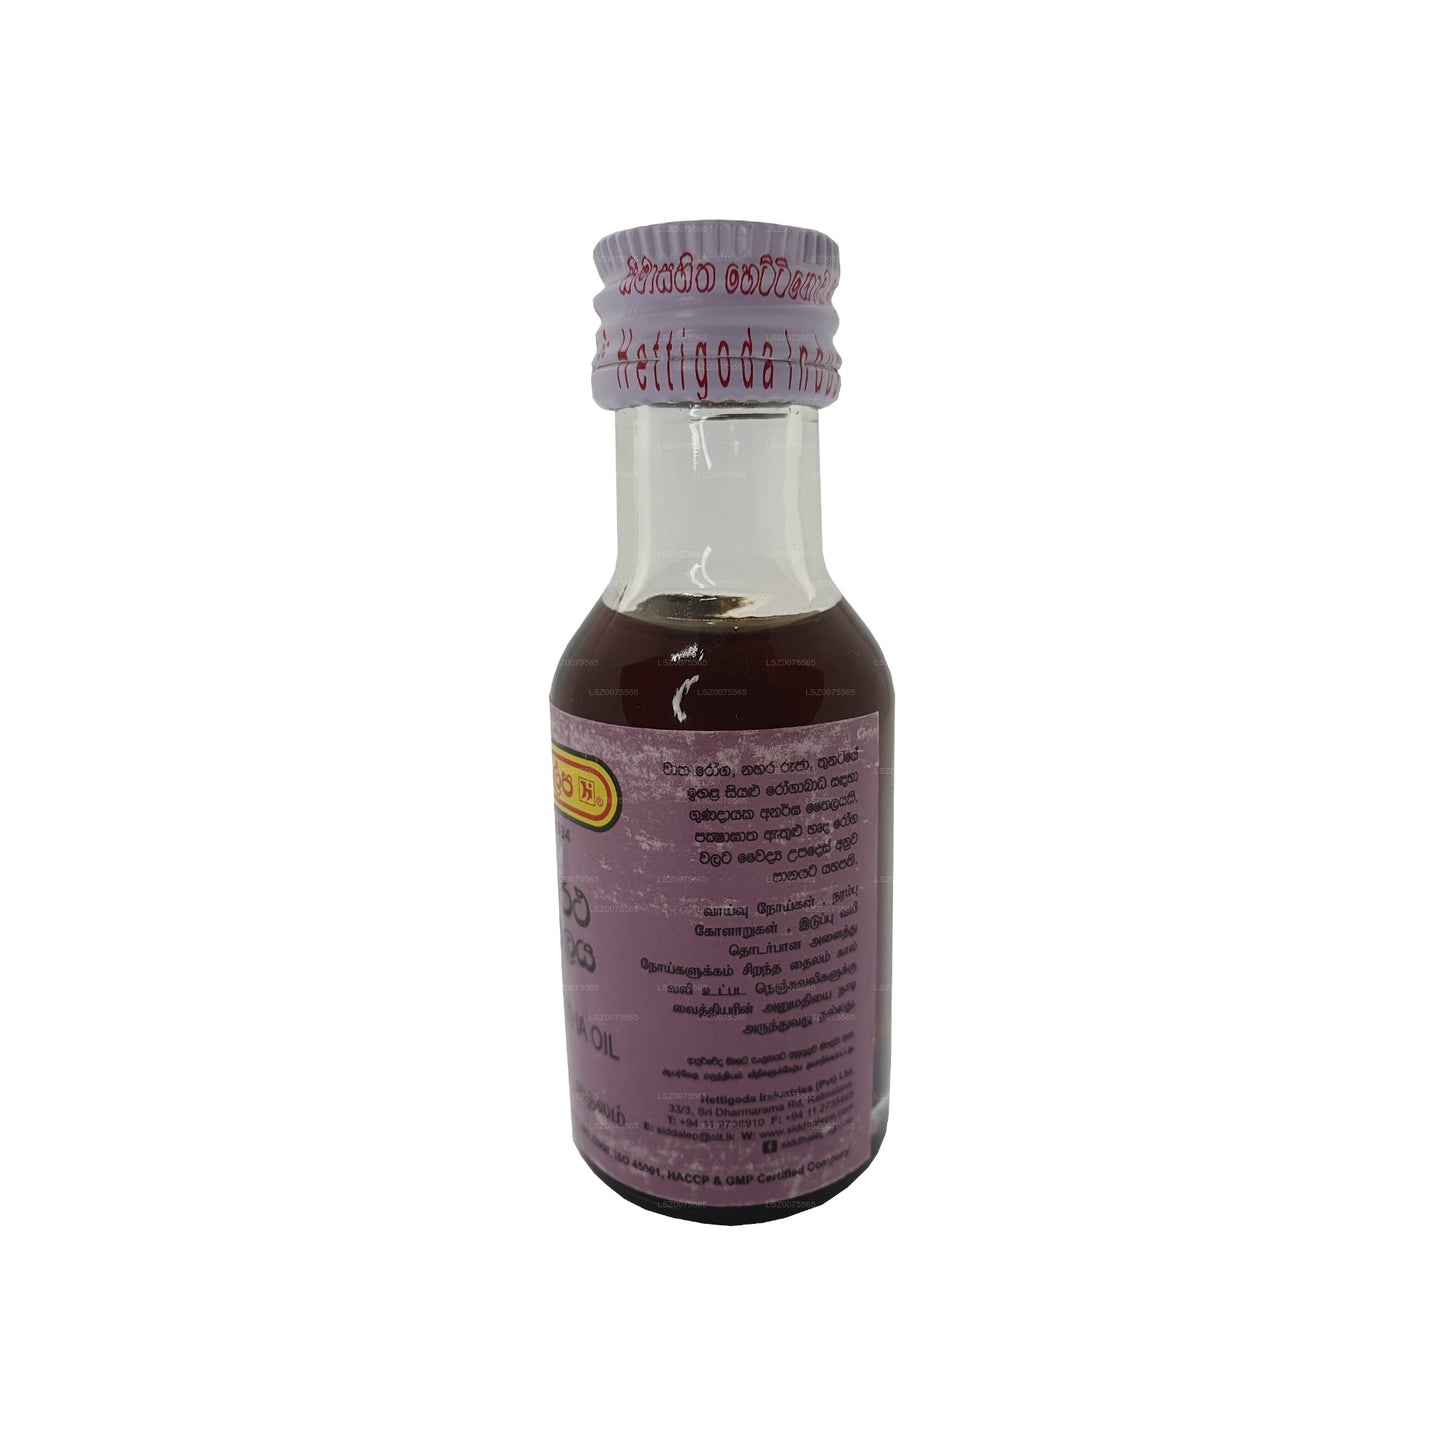 Siddhalepa Siddartha-Öl (30 ml)